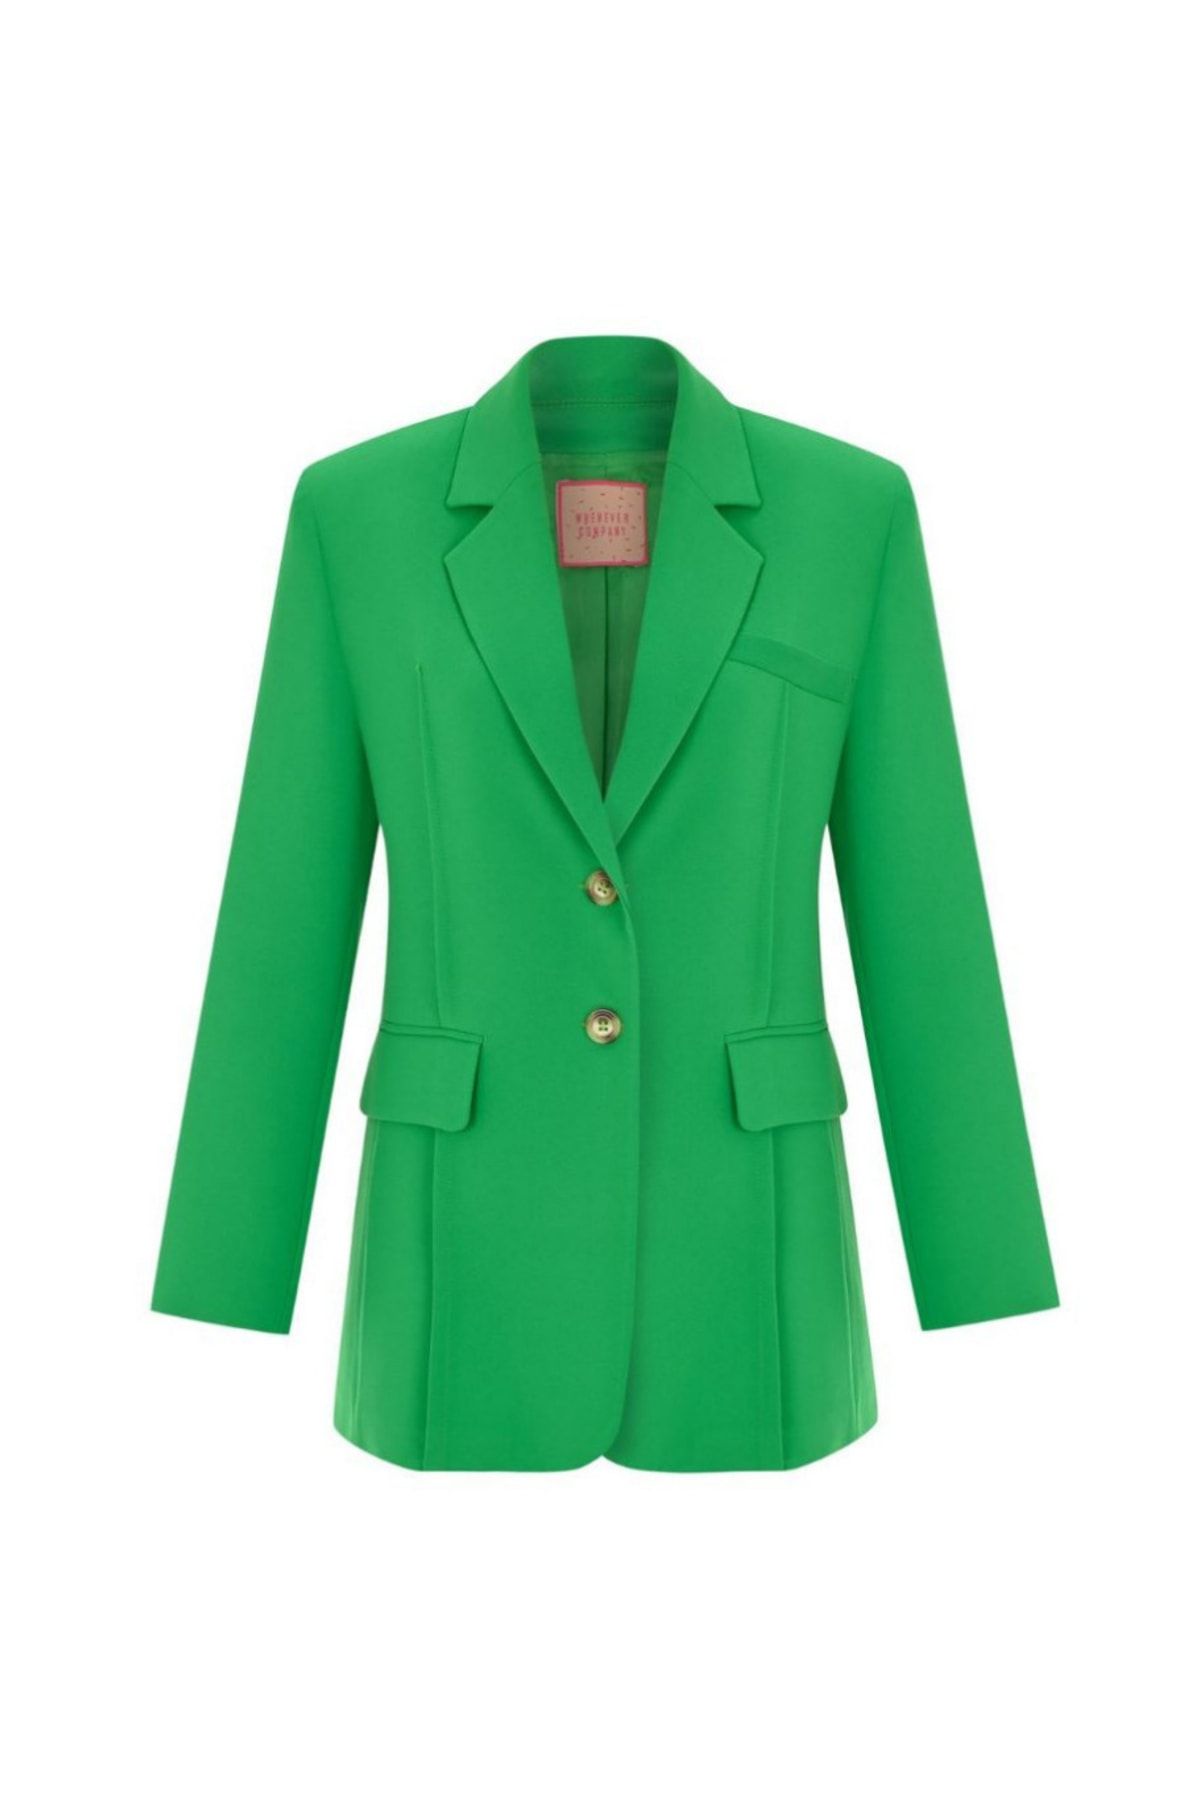 Whenever Company Yeşil Oversize Vatkalı Içi Astarlı Krep Çift Düğmeli Cepli Premium Ceket